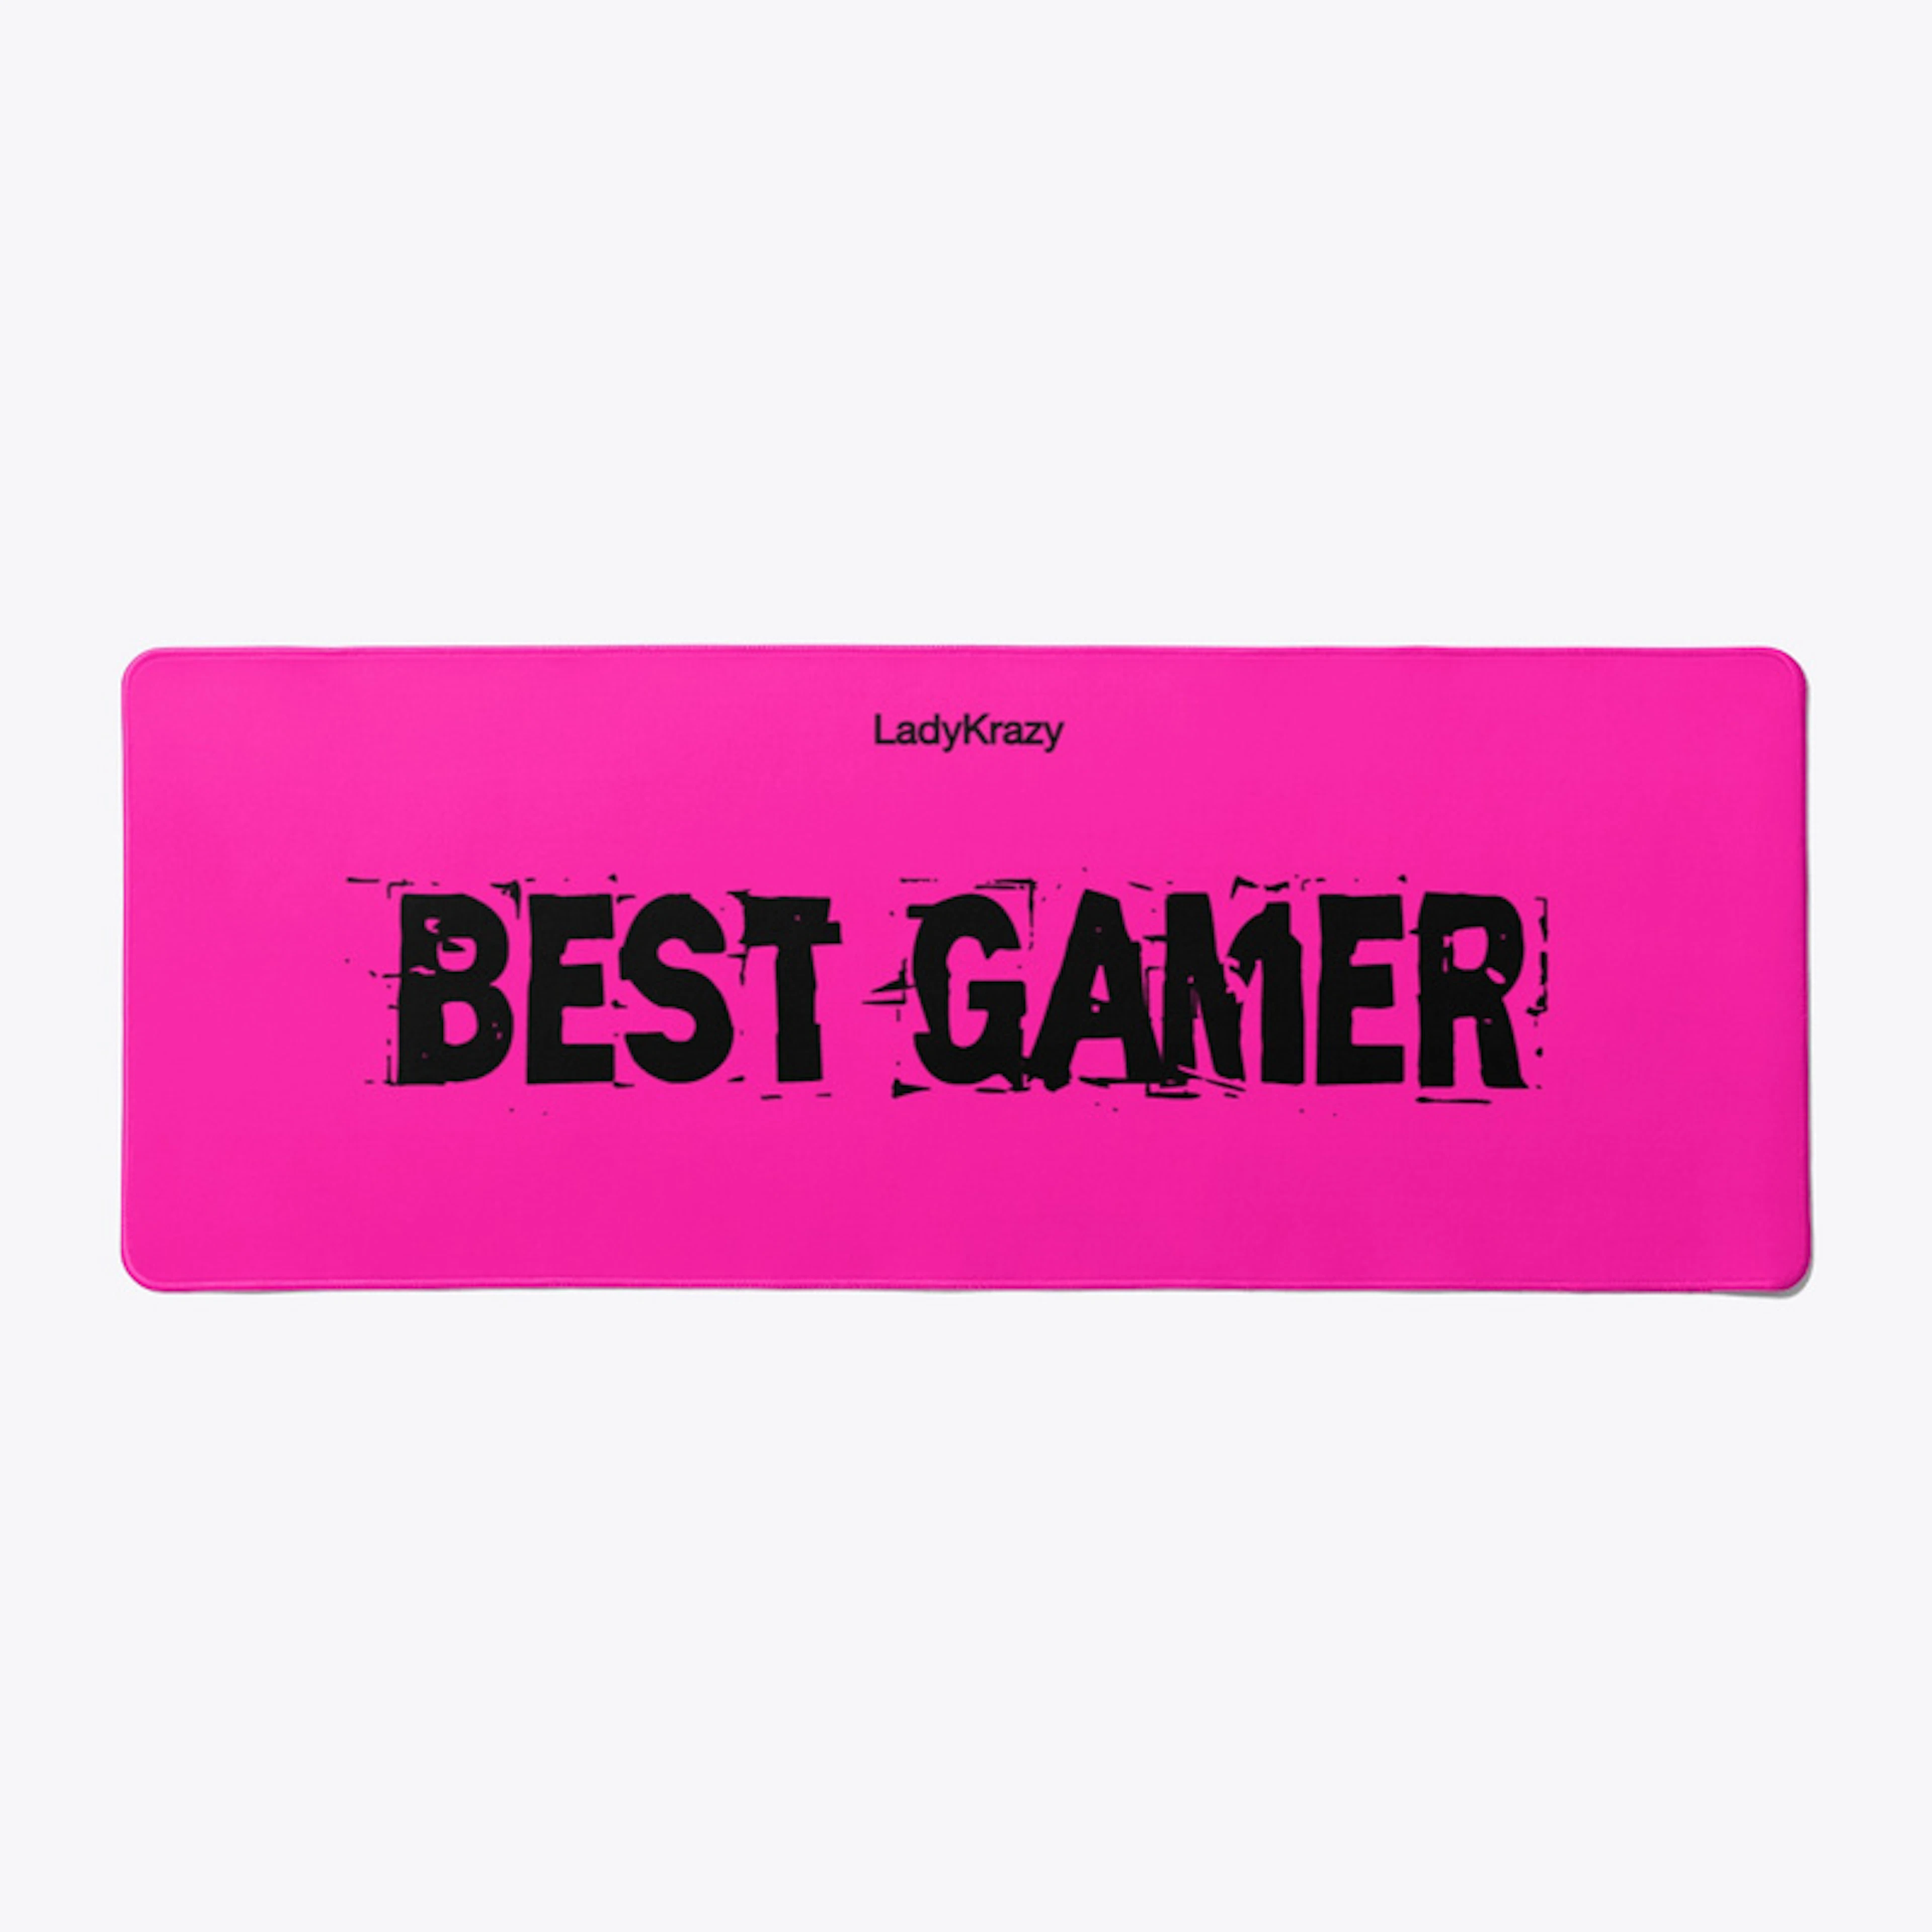 Best Gamer - By Lady Krazy